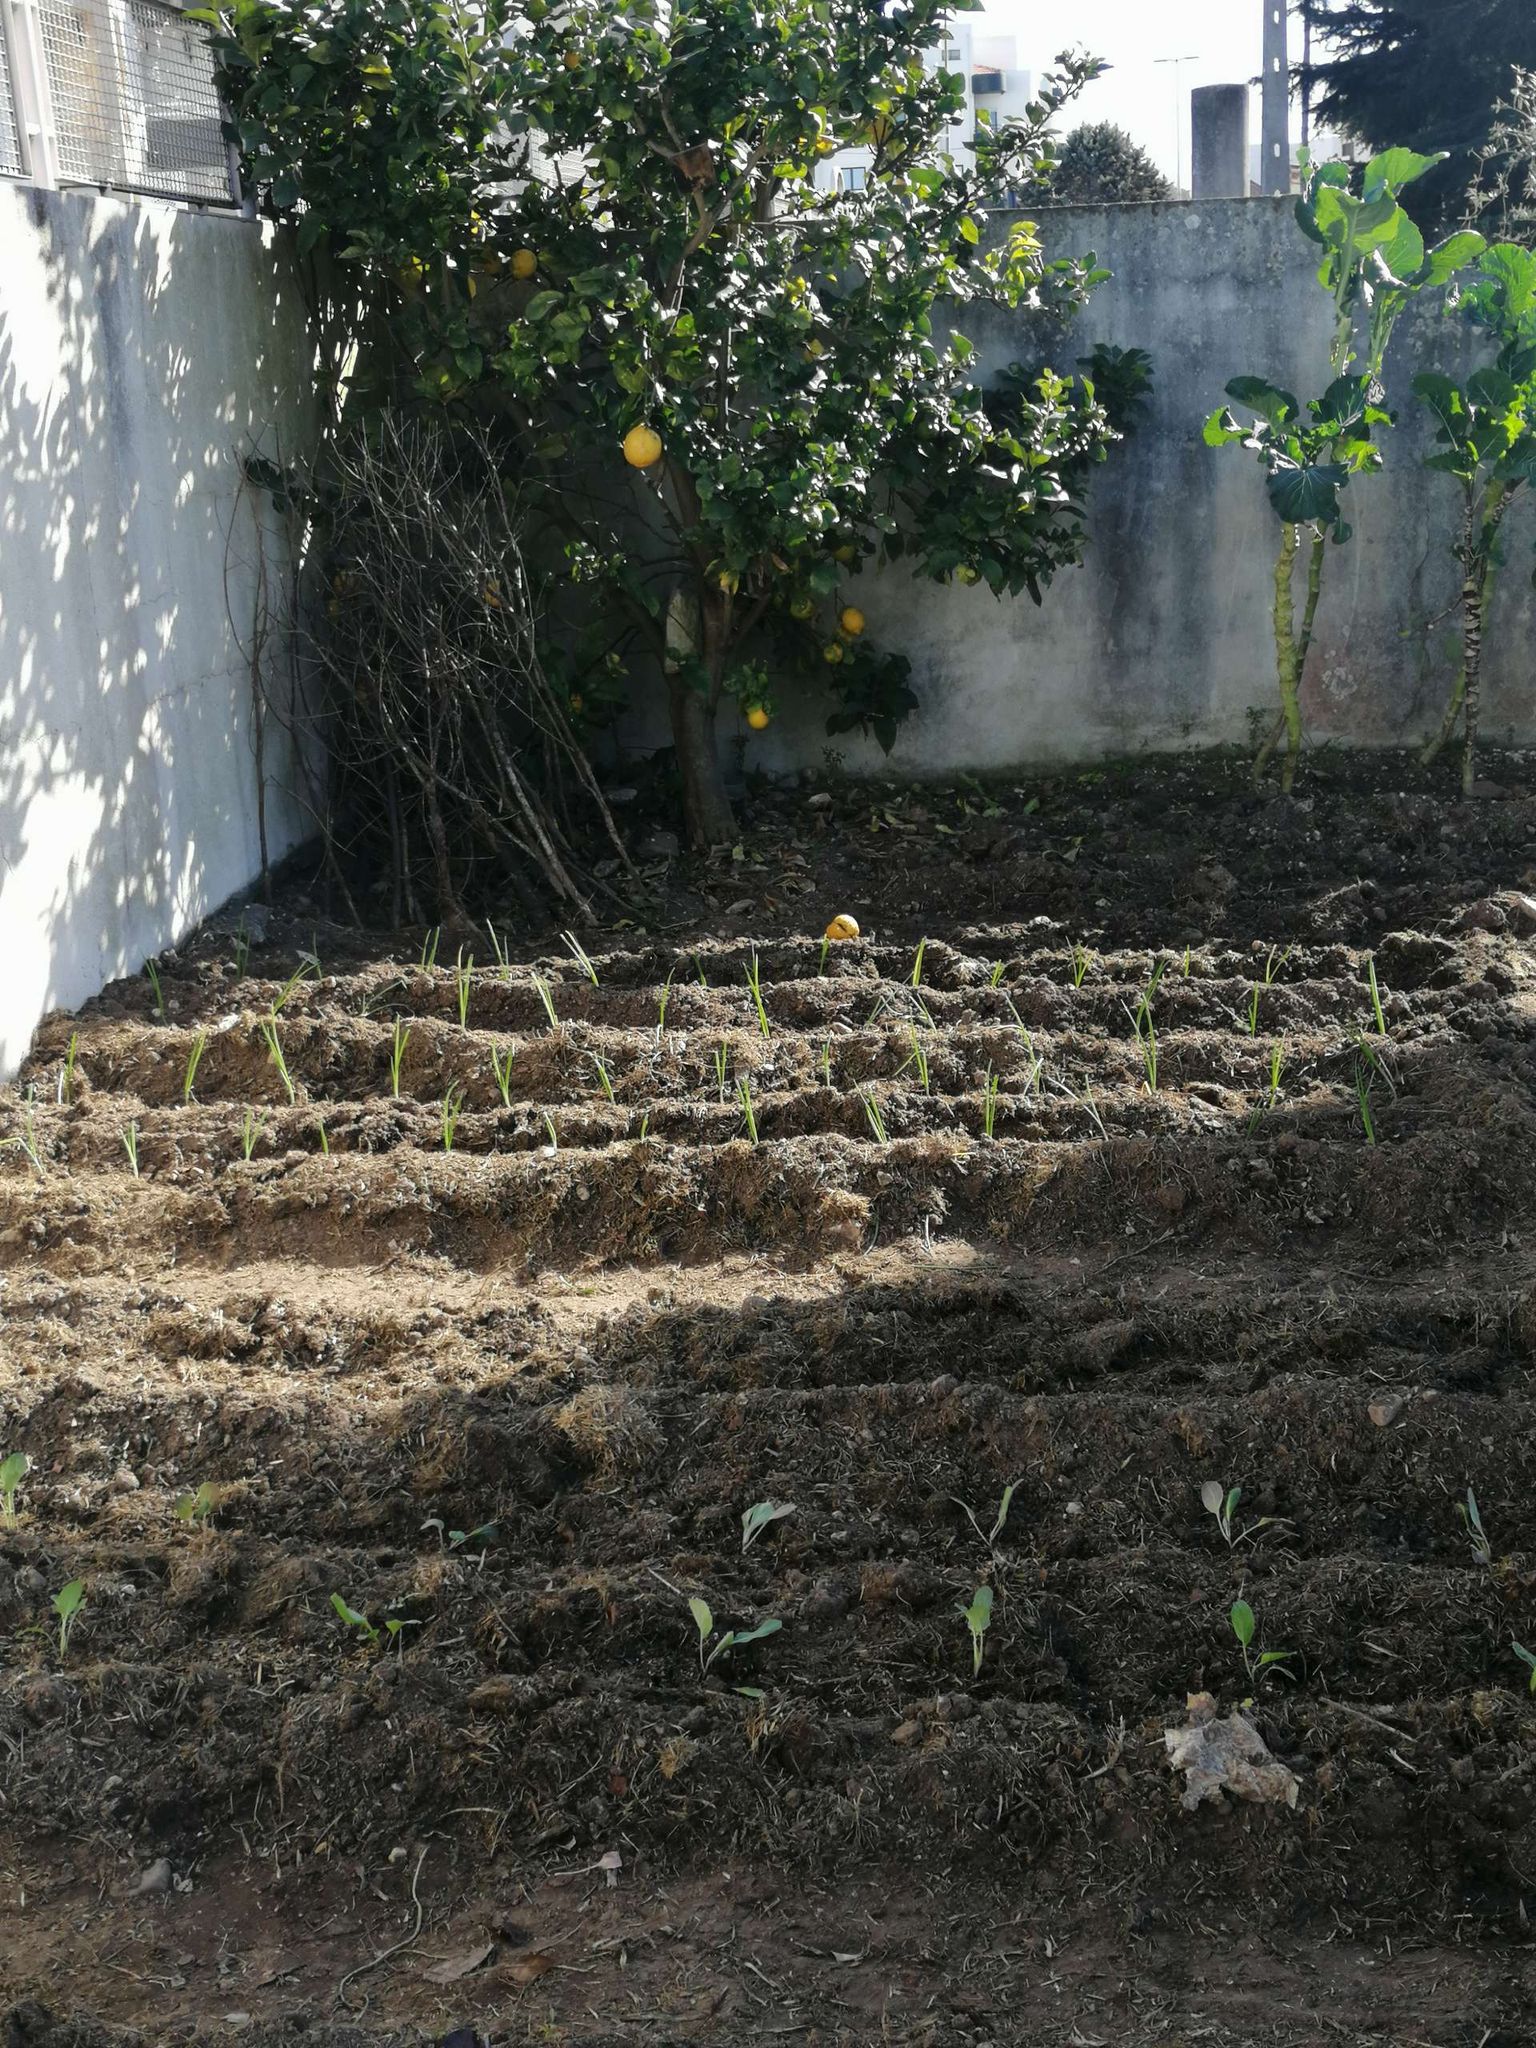 E aqui  está a nossa horta! Juntos retirámos as ervas daninhas e depois de remexida e limpa a terra, cultivámos favas, couve roxa, ervilhas, cebolas.